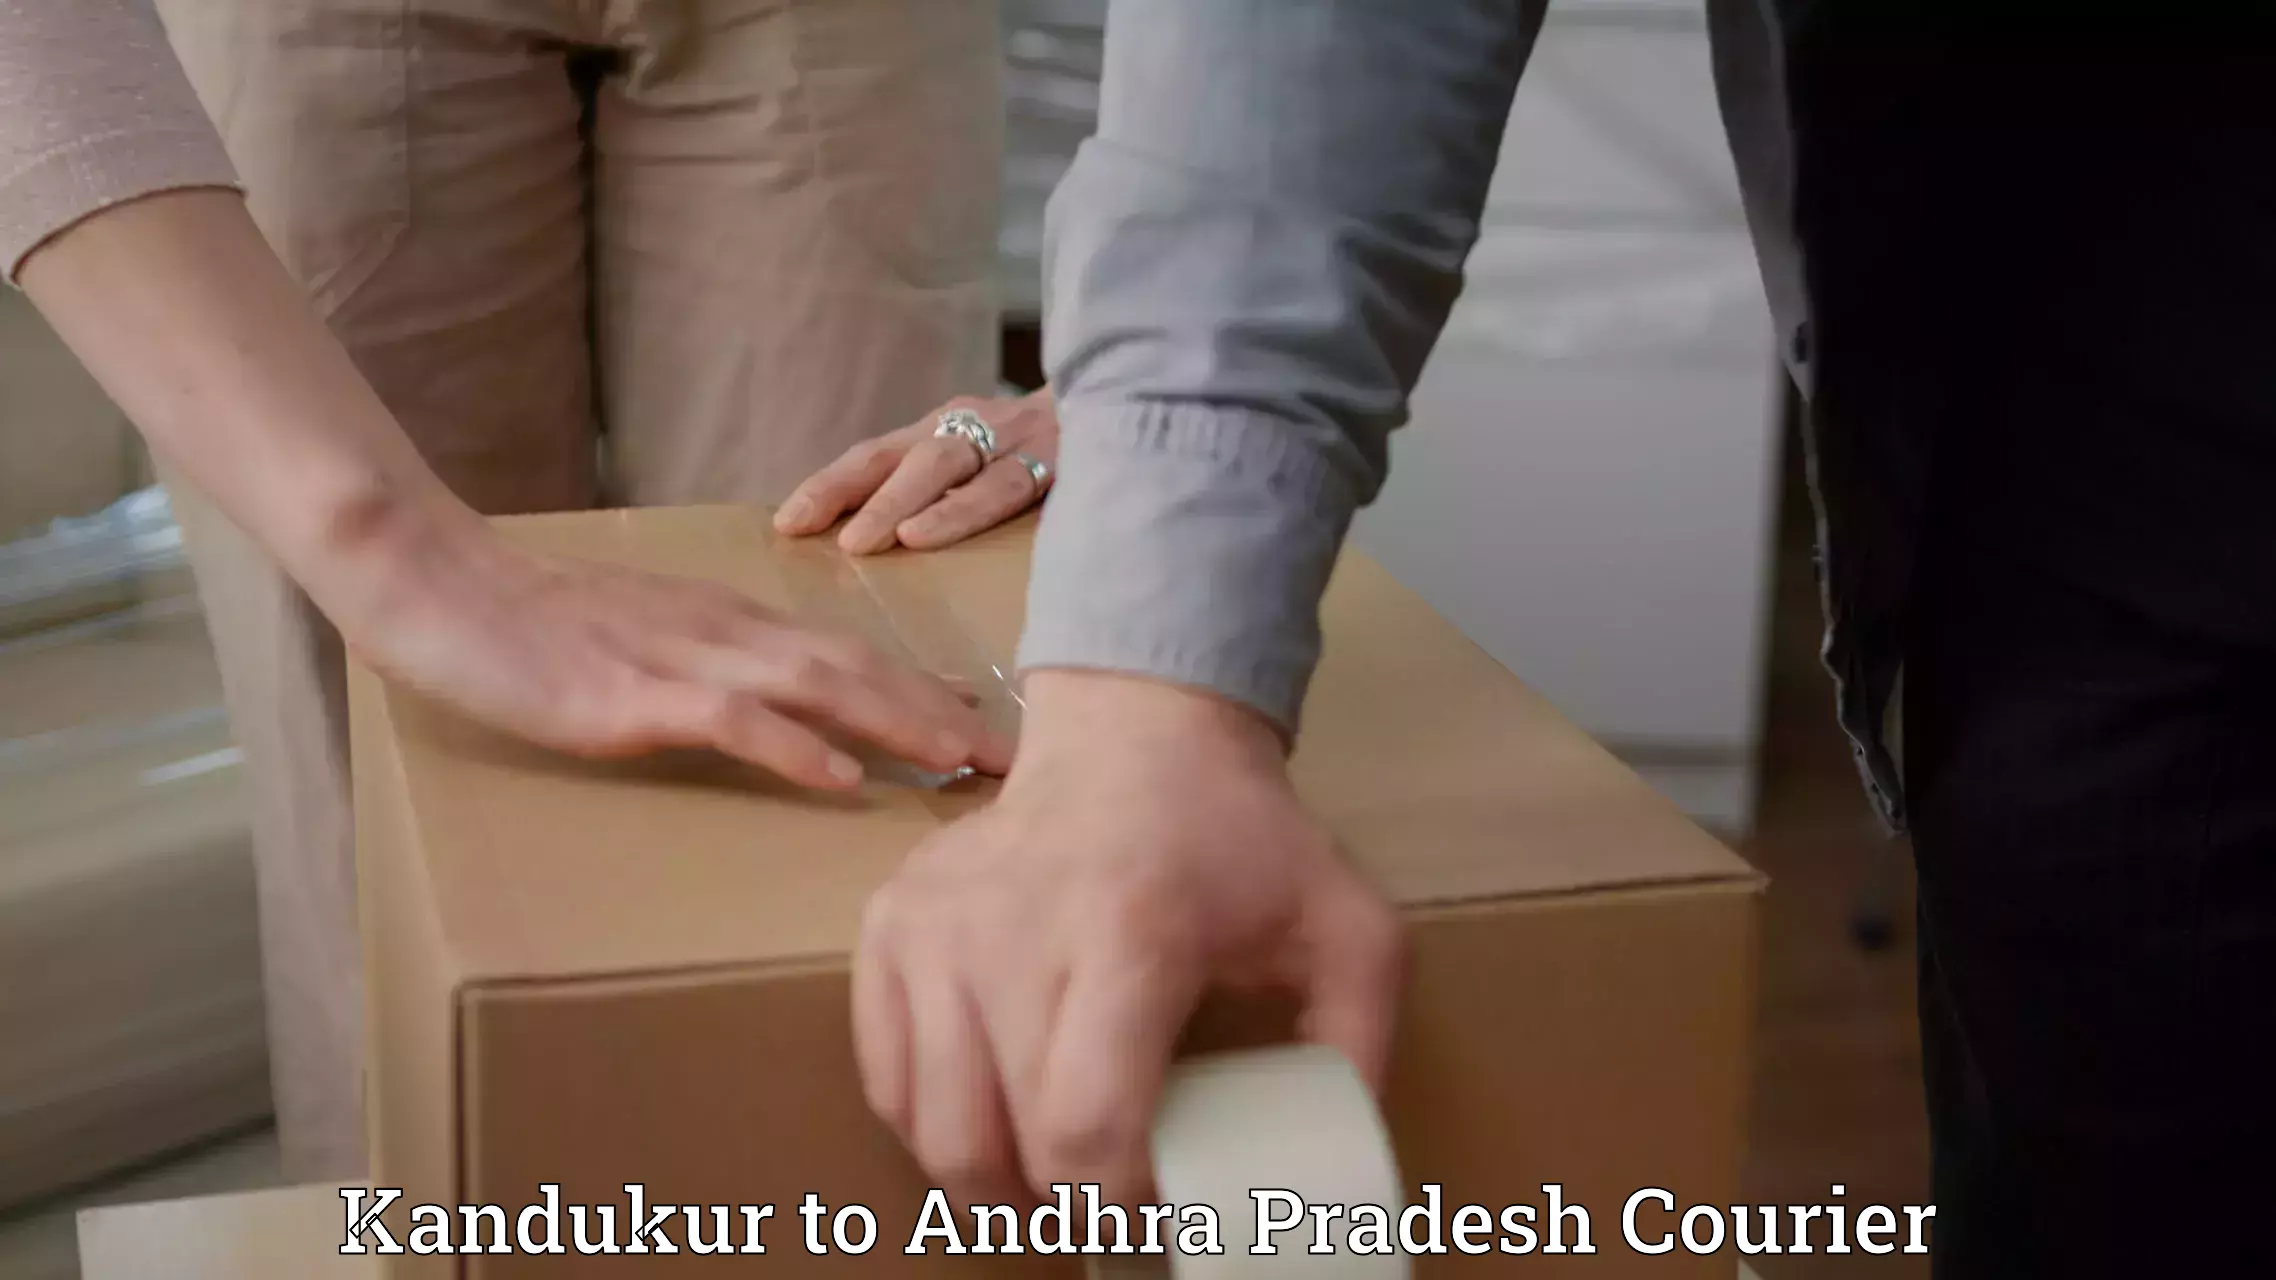 Professional courier services Kandukur to Ichchapuram